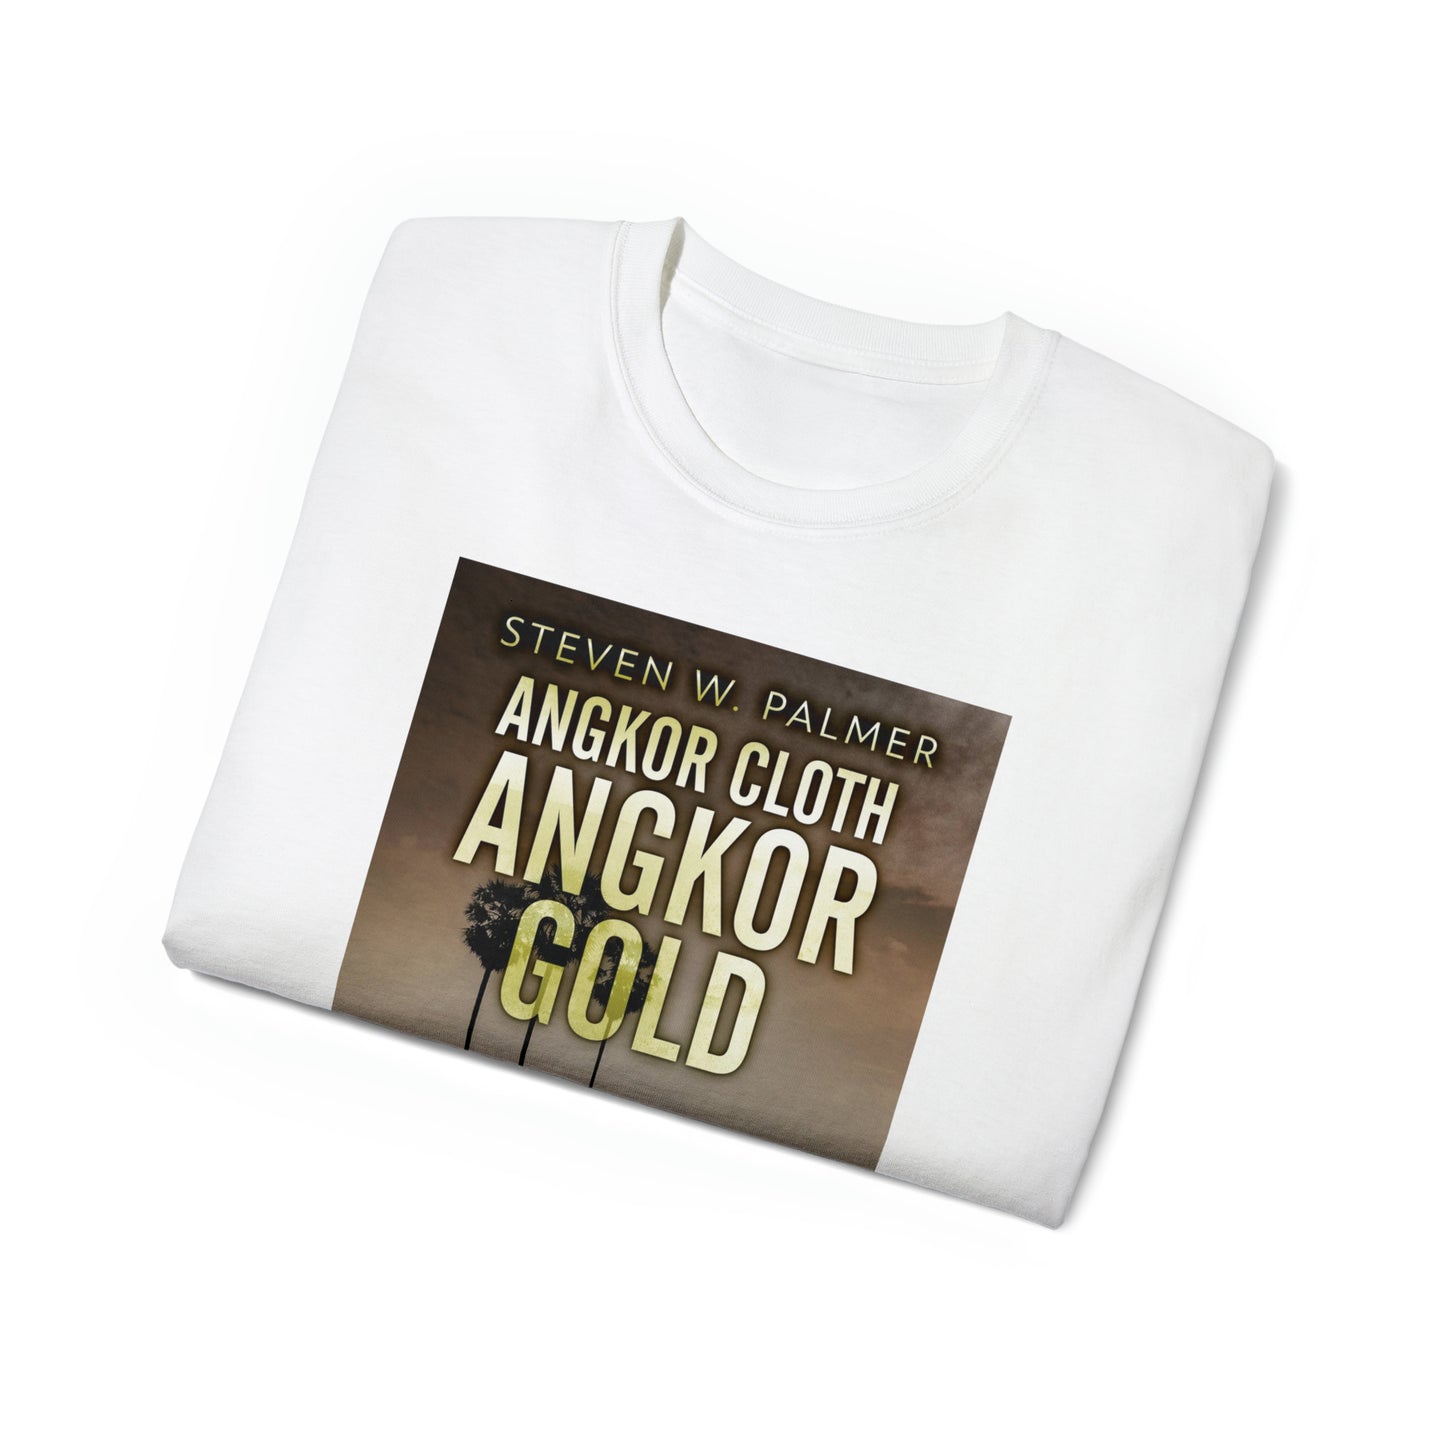 Angkor Cloth, Angkor Gold - Unisex T-Shirt